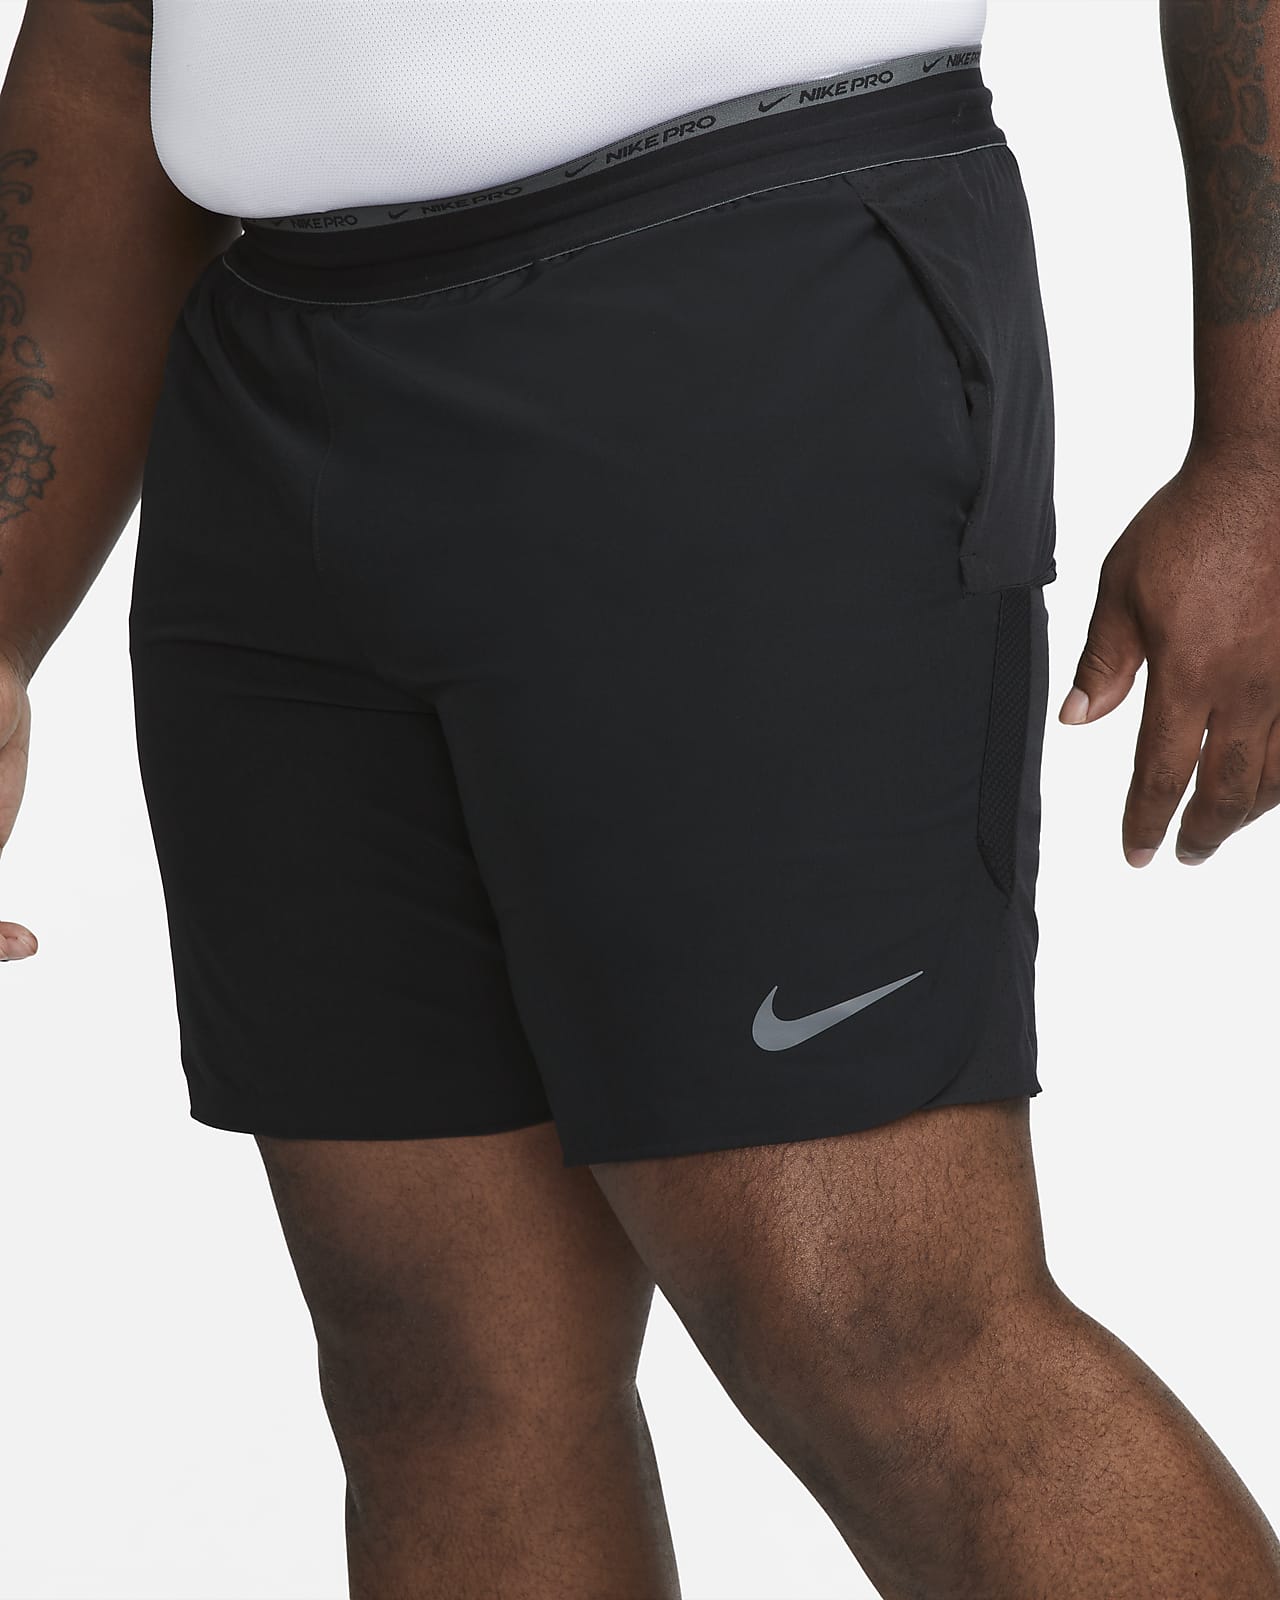 césped todo lo mejor Humillar Shorts de entrenamiento sin forro de 20 cm para hombre Nike Dri-FIT Flex  Rep Pro Collection. Nike.com